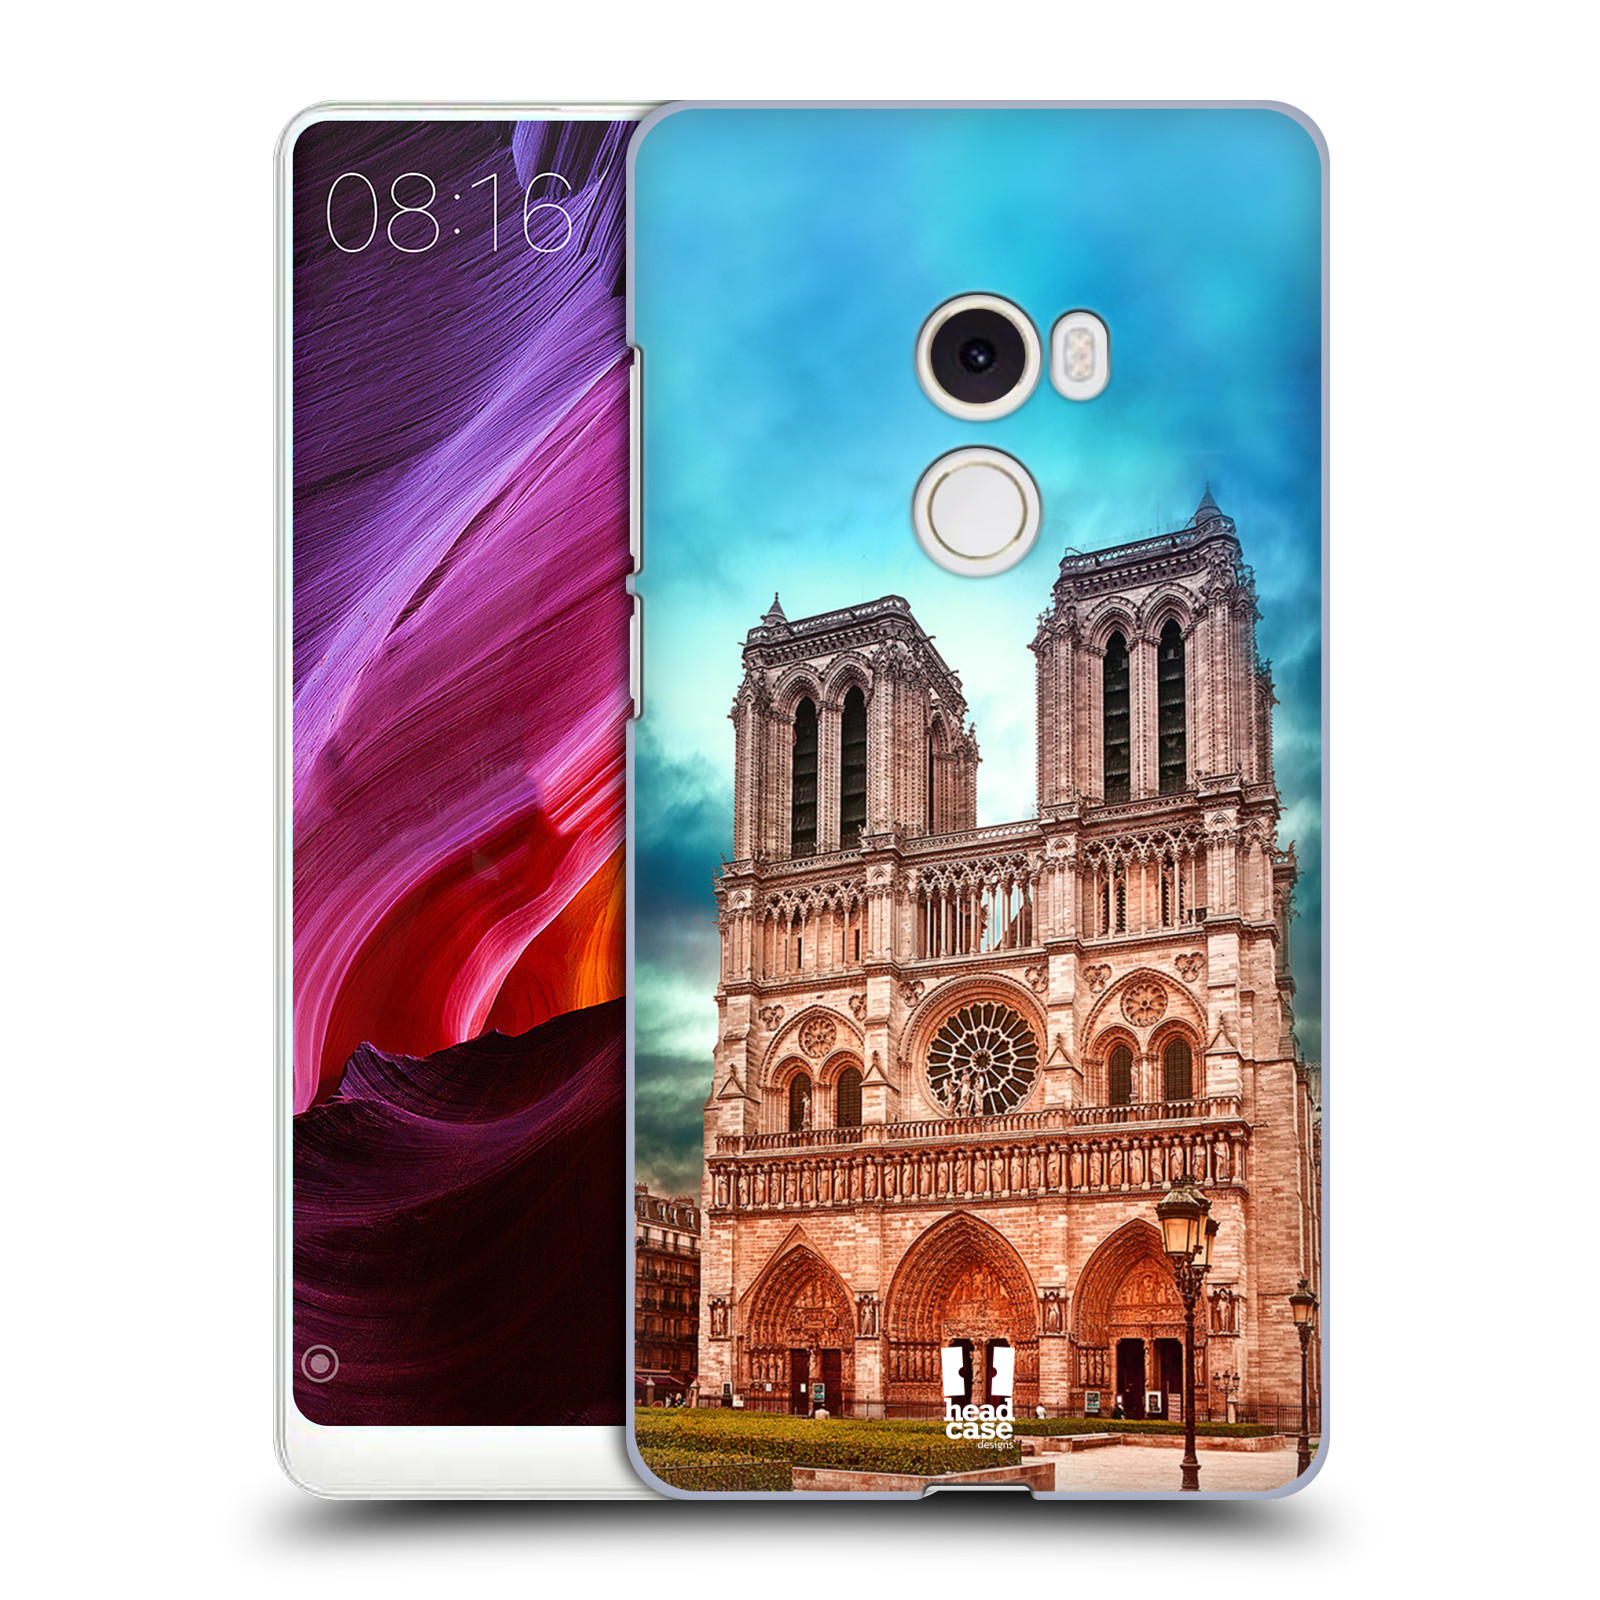 Pouzdro na mobil Xiaomi Mi Mix 2 - HEAD CASE - historická místa katedrála Notre Dame